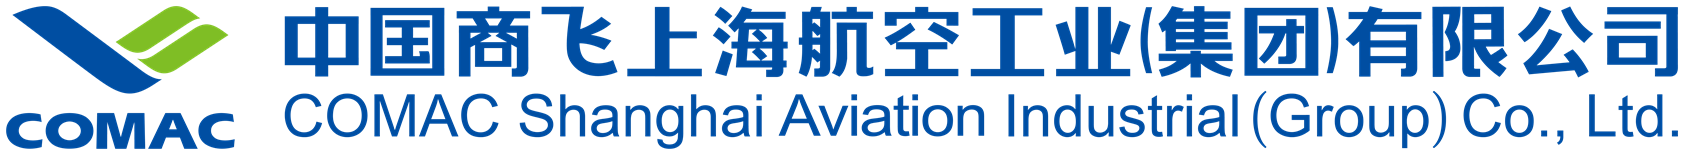 中国商飞上海航空工业(集团)有限企业-04.png